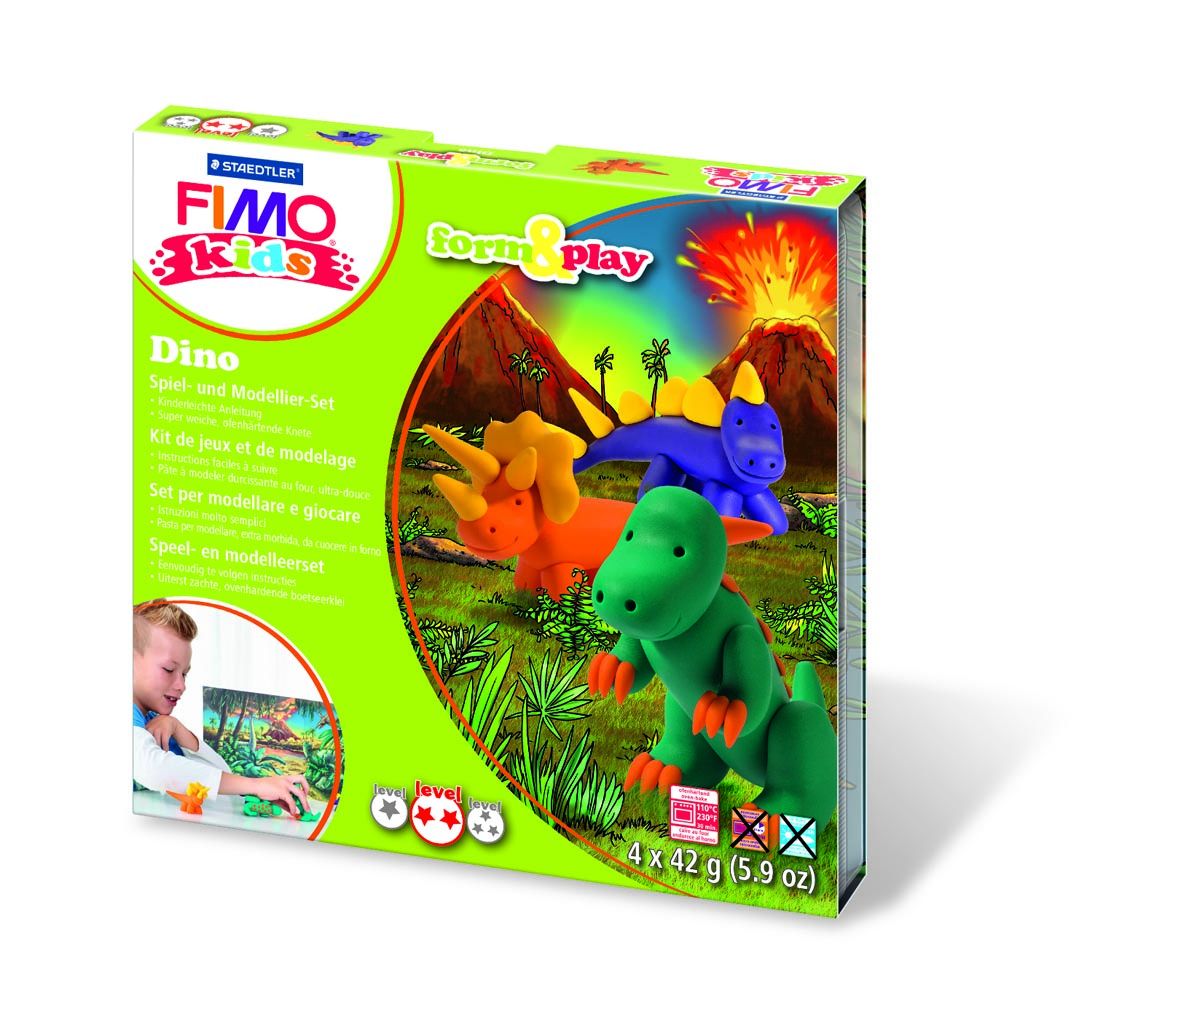 STAEDTLER FIMO kids form & play Dino von Staedtler